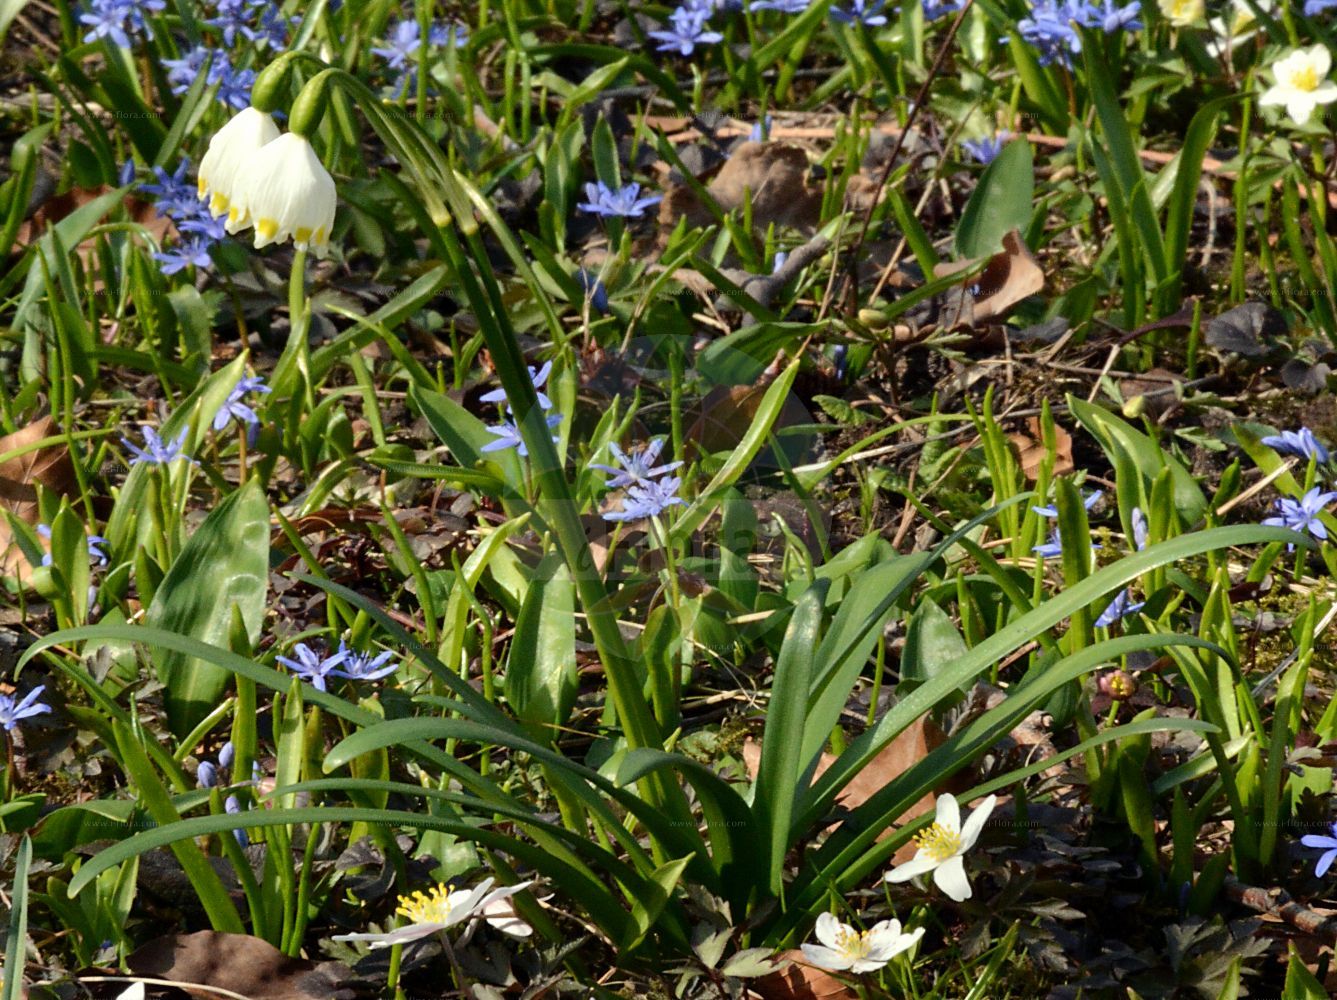 Foto von Leucojum vernum (Märzenbecher - Spring Snowflake). ---- Photo of Leucojum vernum (Märzenbecher - Spring Snowflake).(Leucojum vernum,Märzenbecher,Spring Snowflake,Erinosma verna,Galanthus vernus,Leucojum vernum,Nivaria verna,Maerzenbecher,Grosses Schneegloeckchen,Spring Snowflake,Leucojum,Knotenblume,Snowflake,Amaryllidaceae,Narzissengewächse,Amaryllis family)